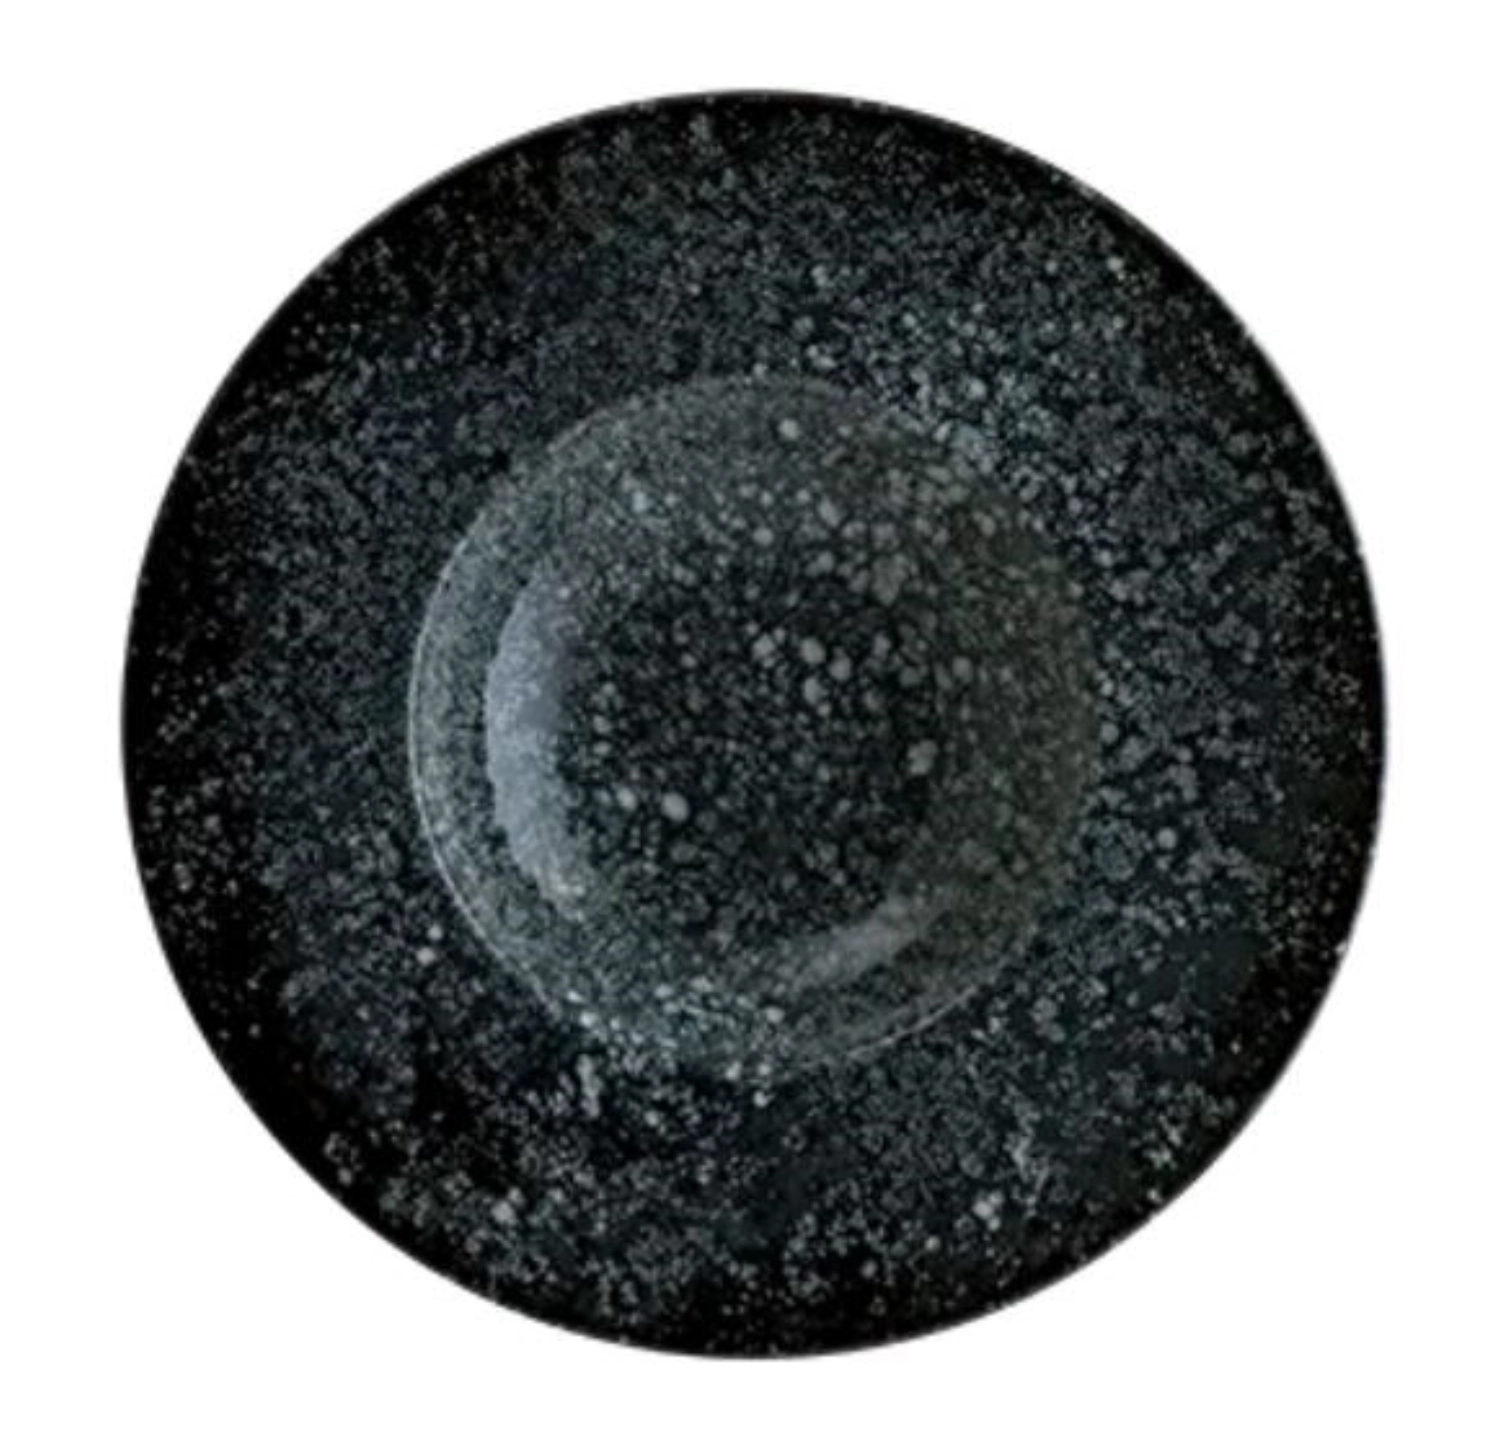 Cosmos black banquet assiette creuse 28 cm 40 cl